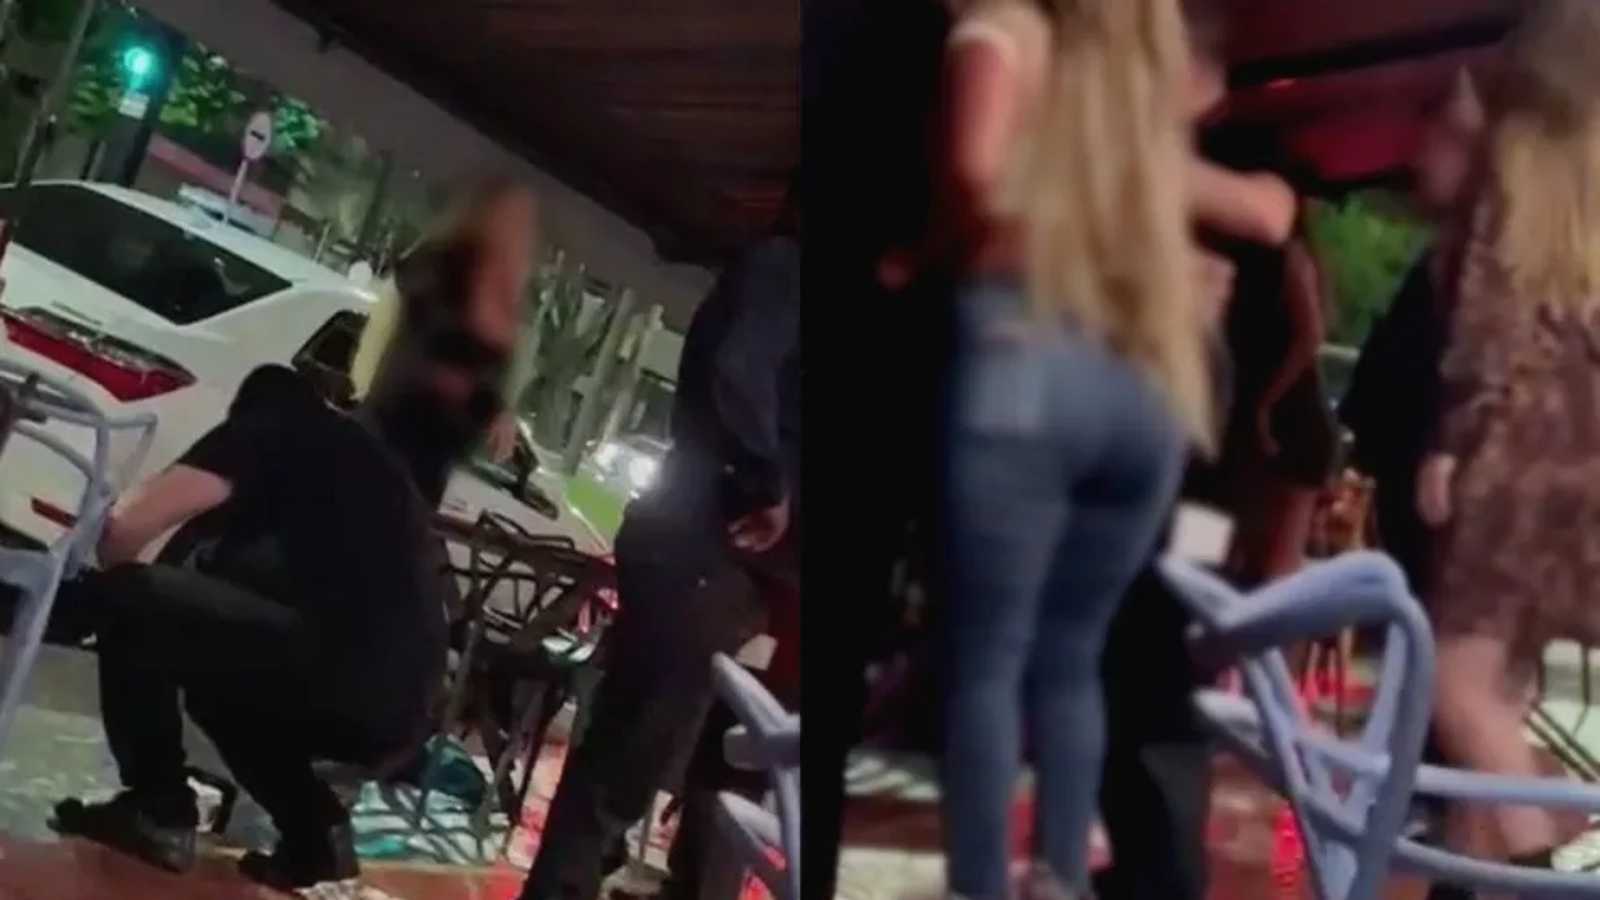 Vídeo: Mulher briga com jovem que teria sido amante do ex-marido em bar